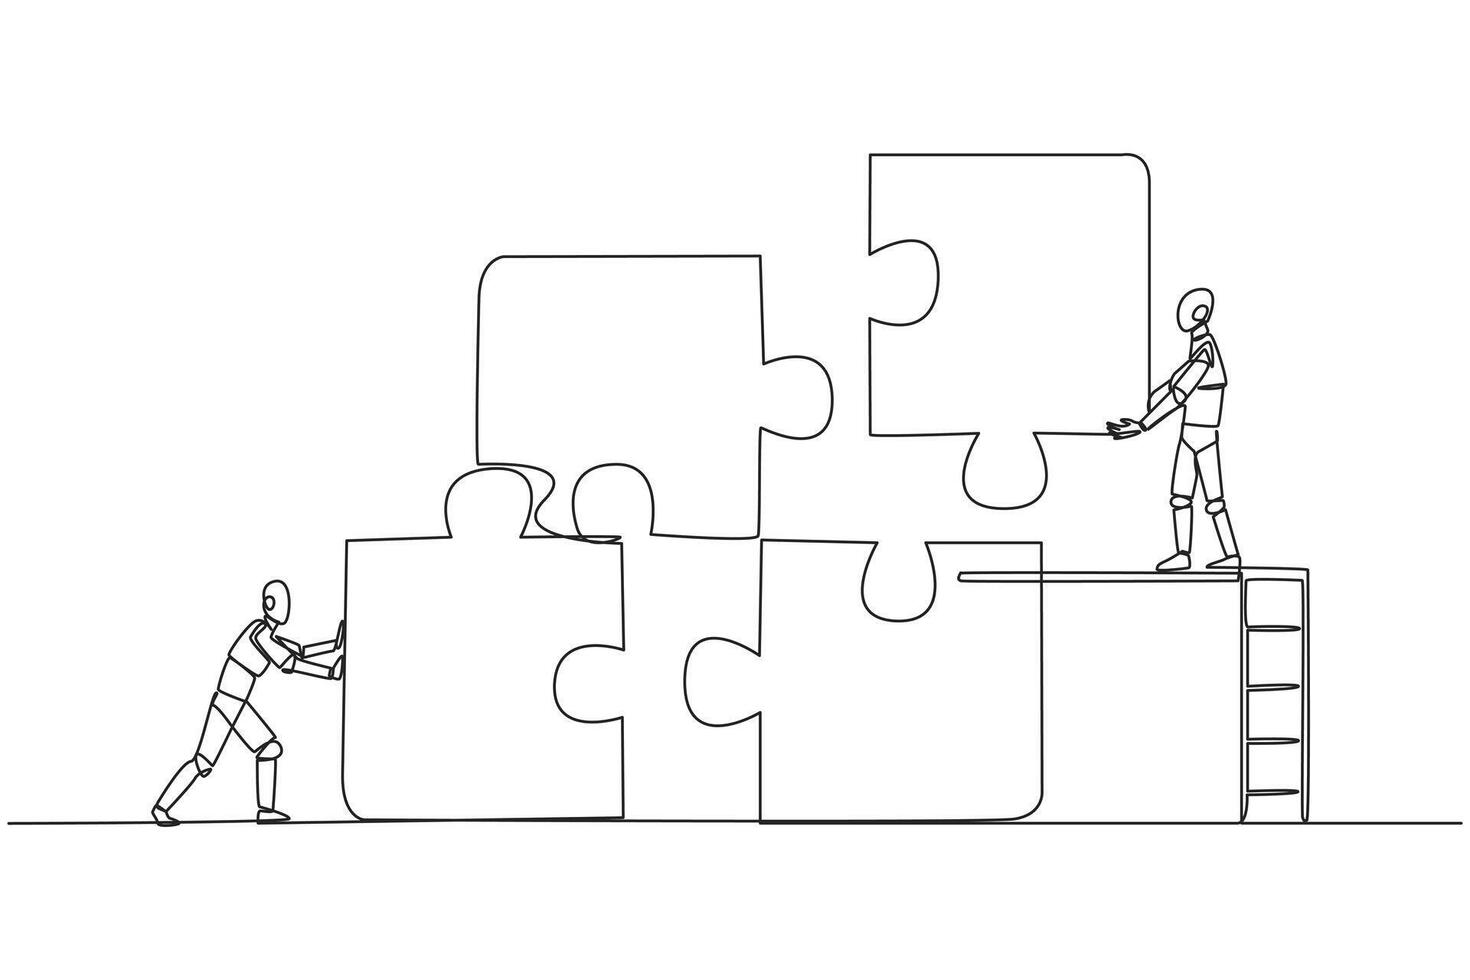 soltero continuo línea dibujo dos robots trabajo en equipo a poner juntos un cuadrado rompecabezas, uno de ellos sube escalera participación arriba un pedazo de el rompecabezas. futuro tecnología. uno línea diseño vector ilustración